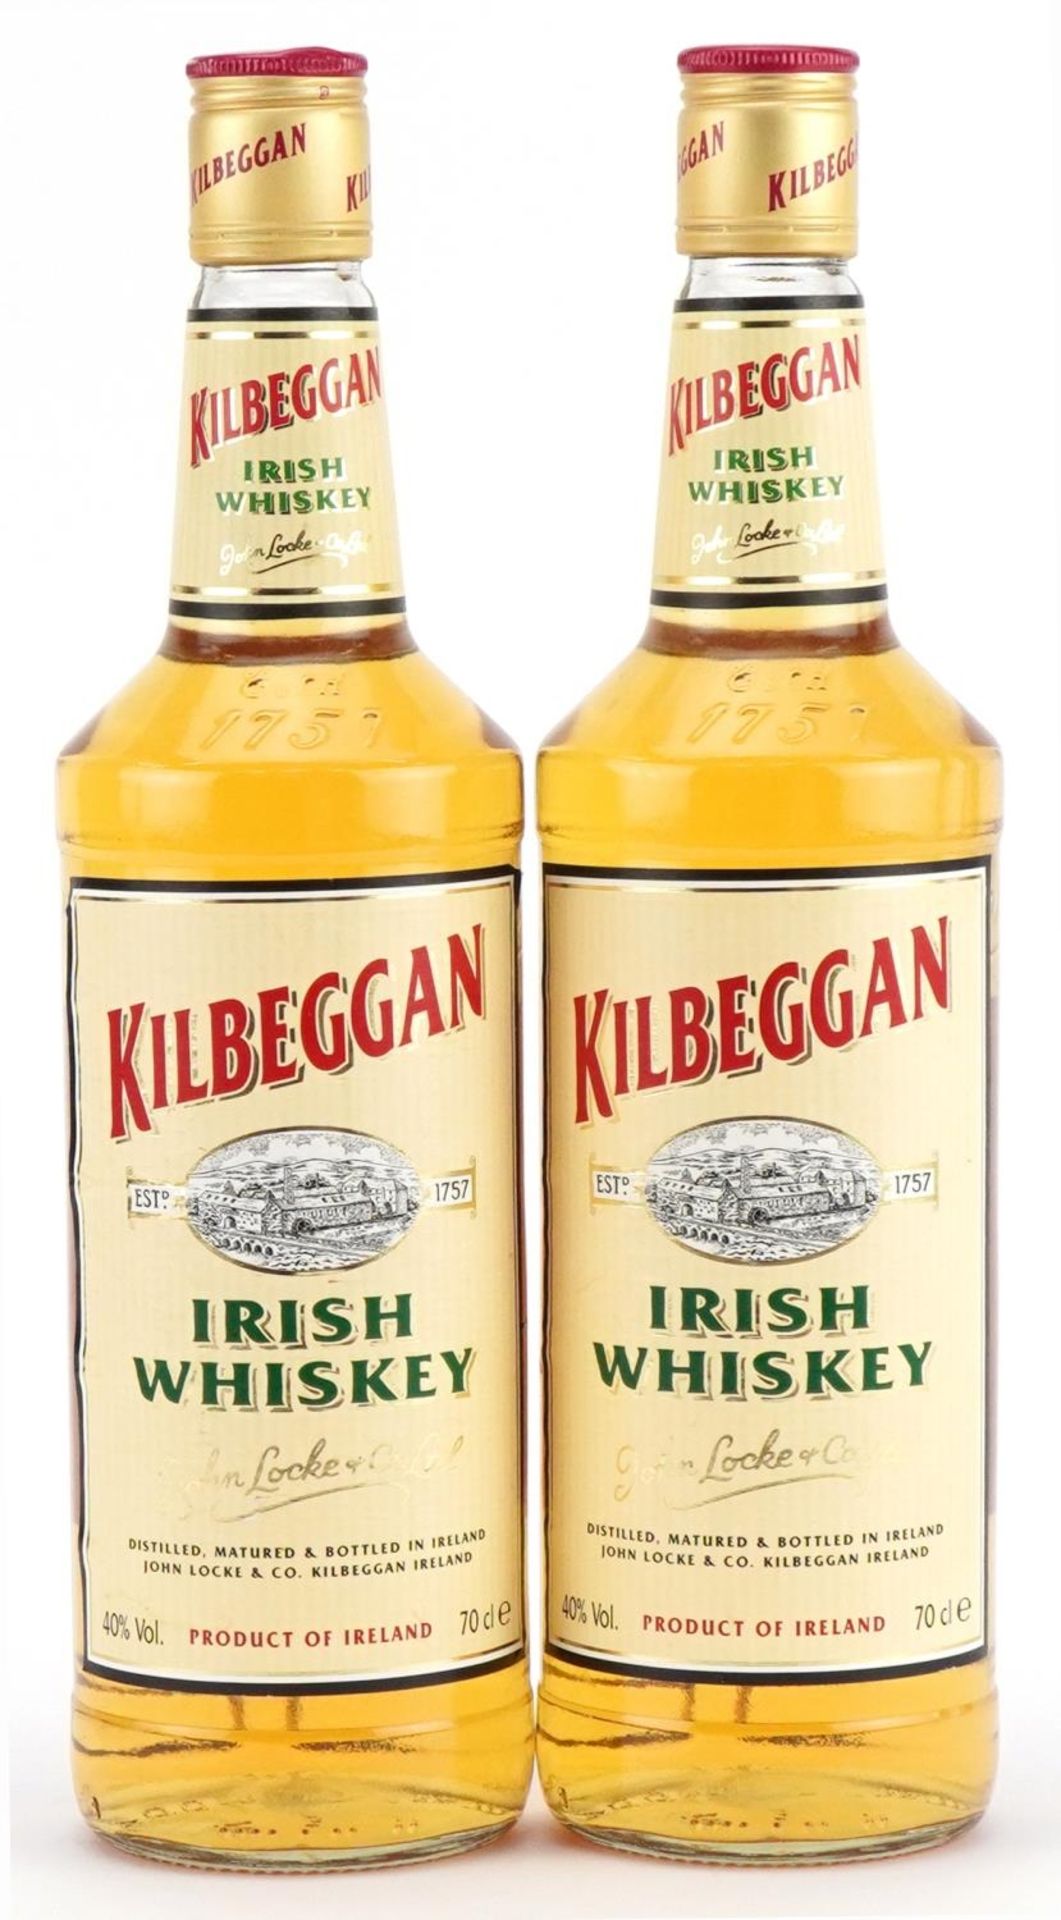 Two bottles of Kilbeggan Irish whisky, John Locke & Co Ltd : For further information on this lot